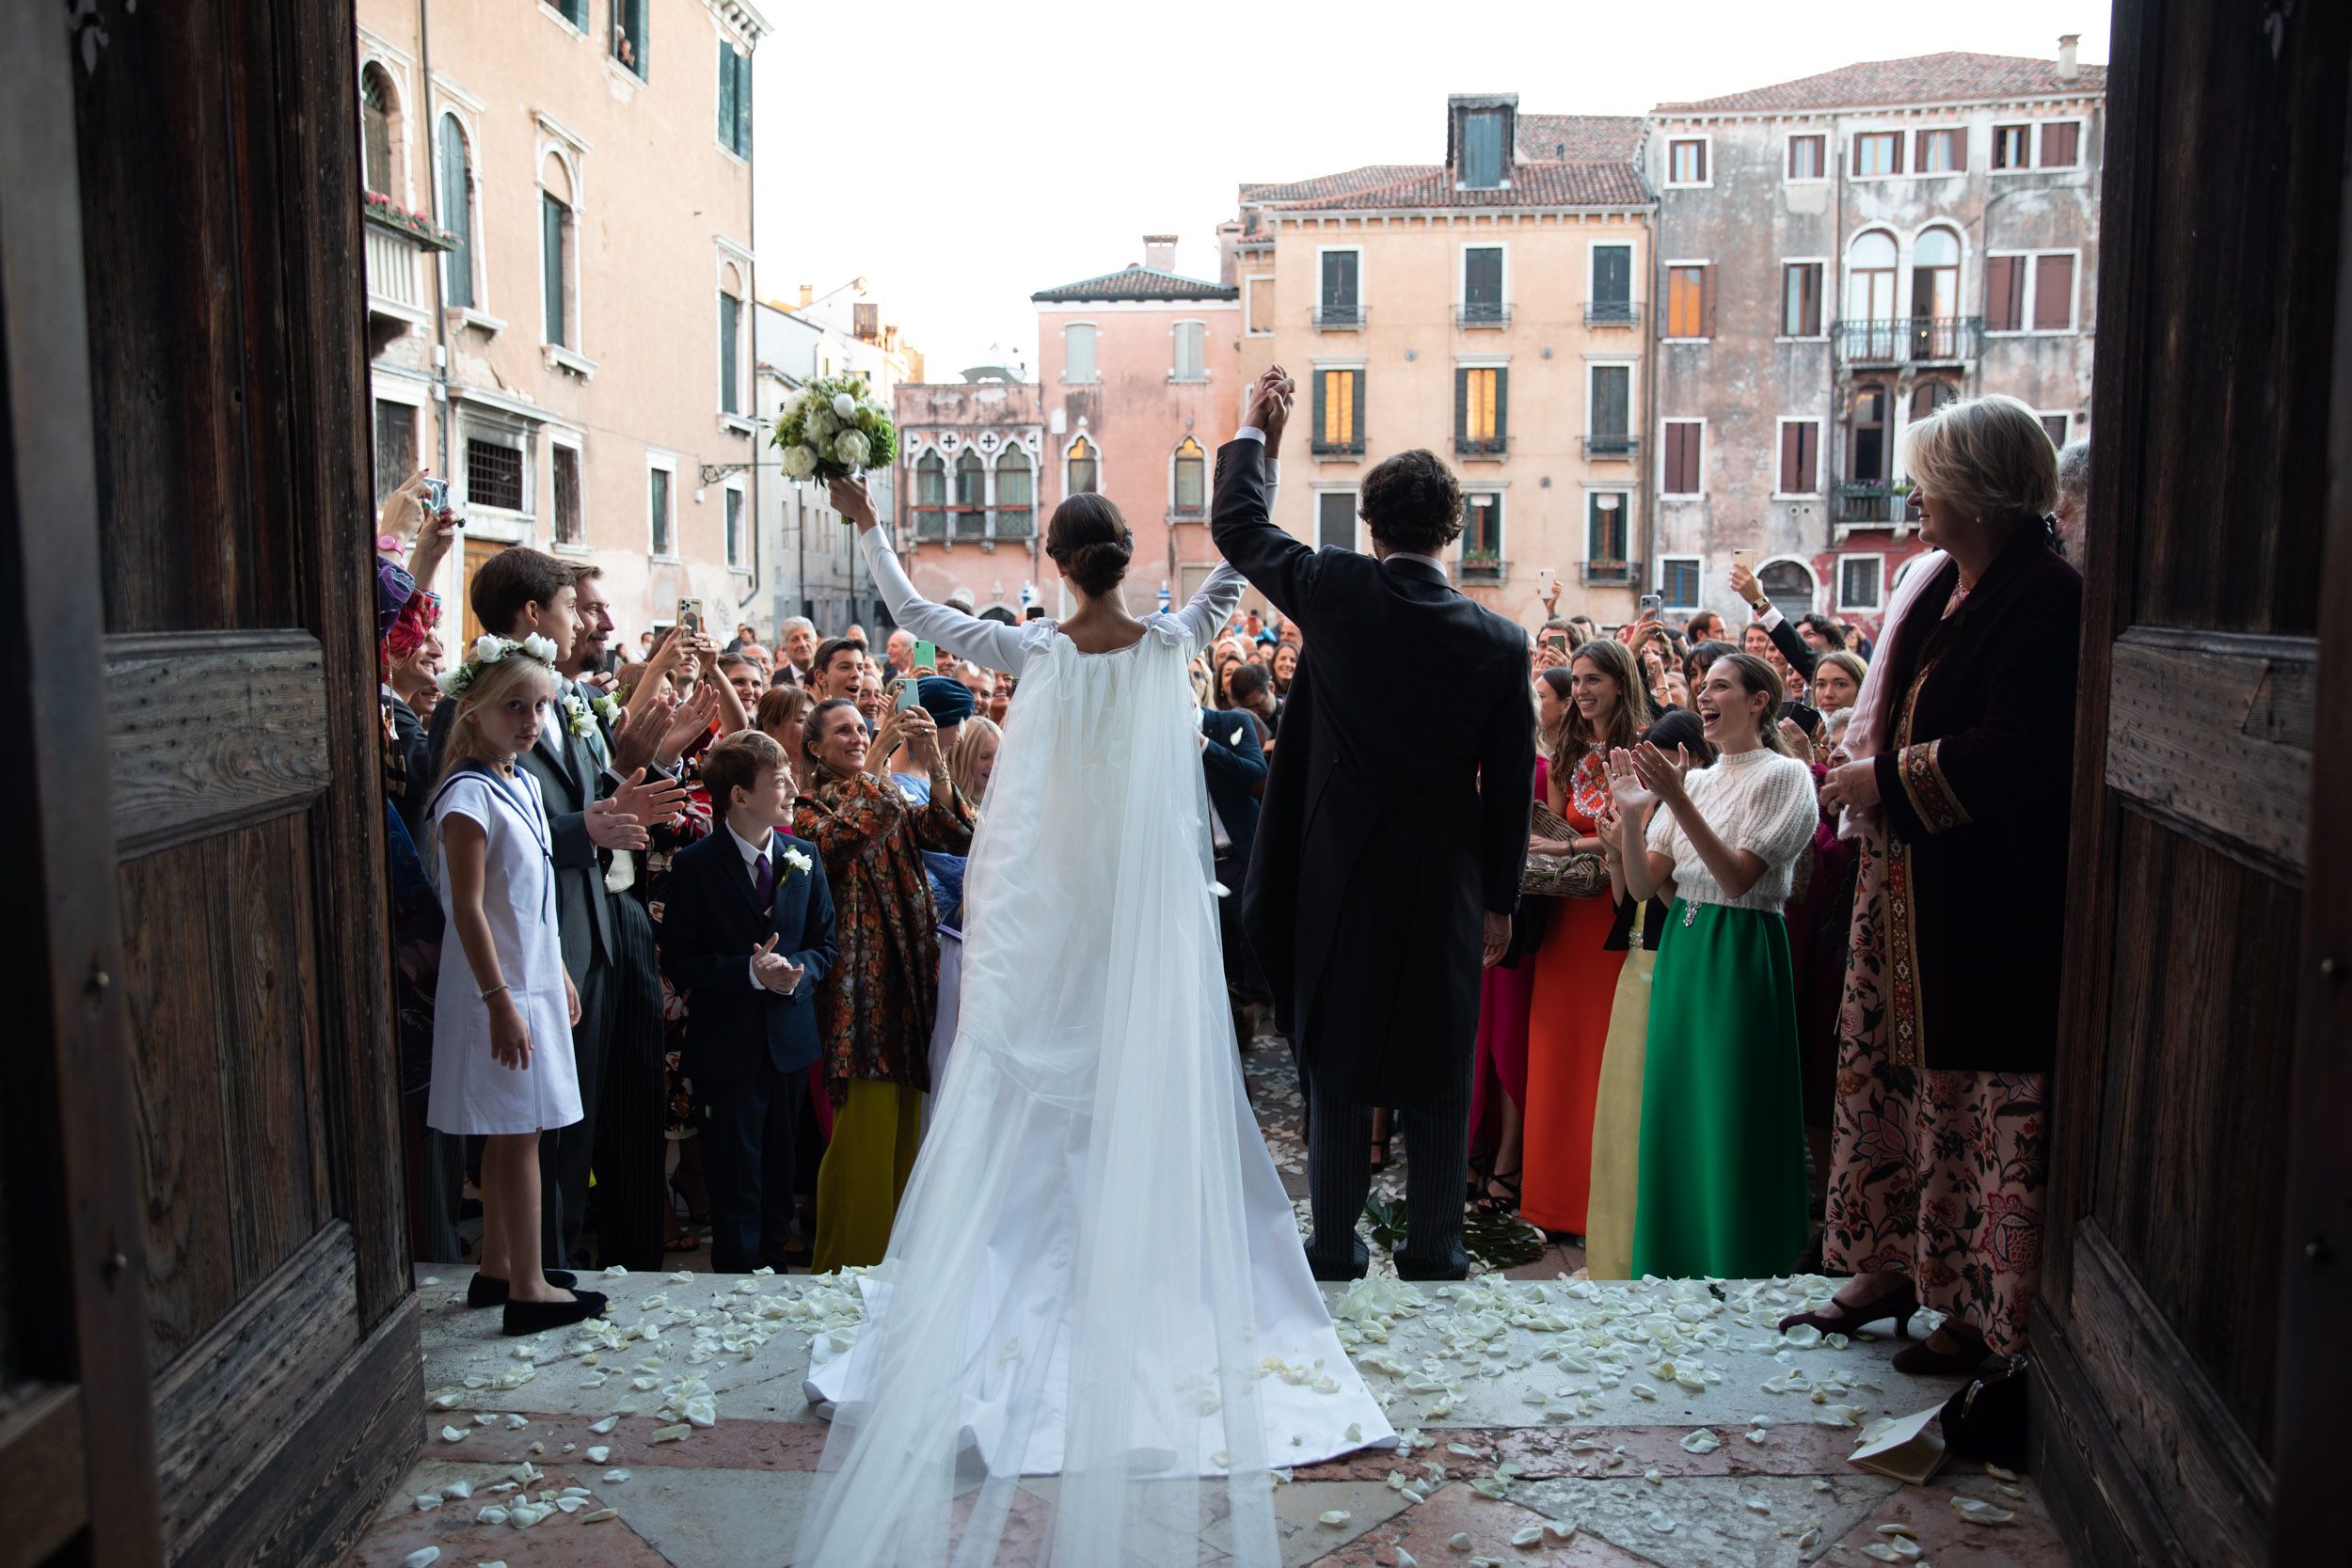 これぞ大人婚♡イタリア貴族カップルの伝統的な「ヴェネチアン